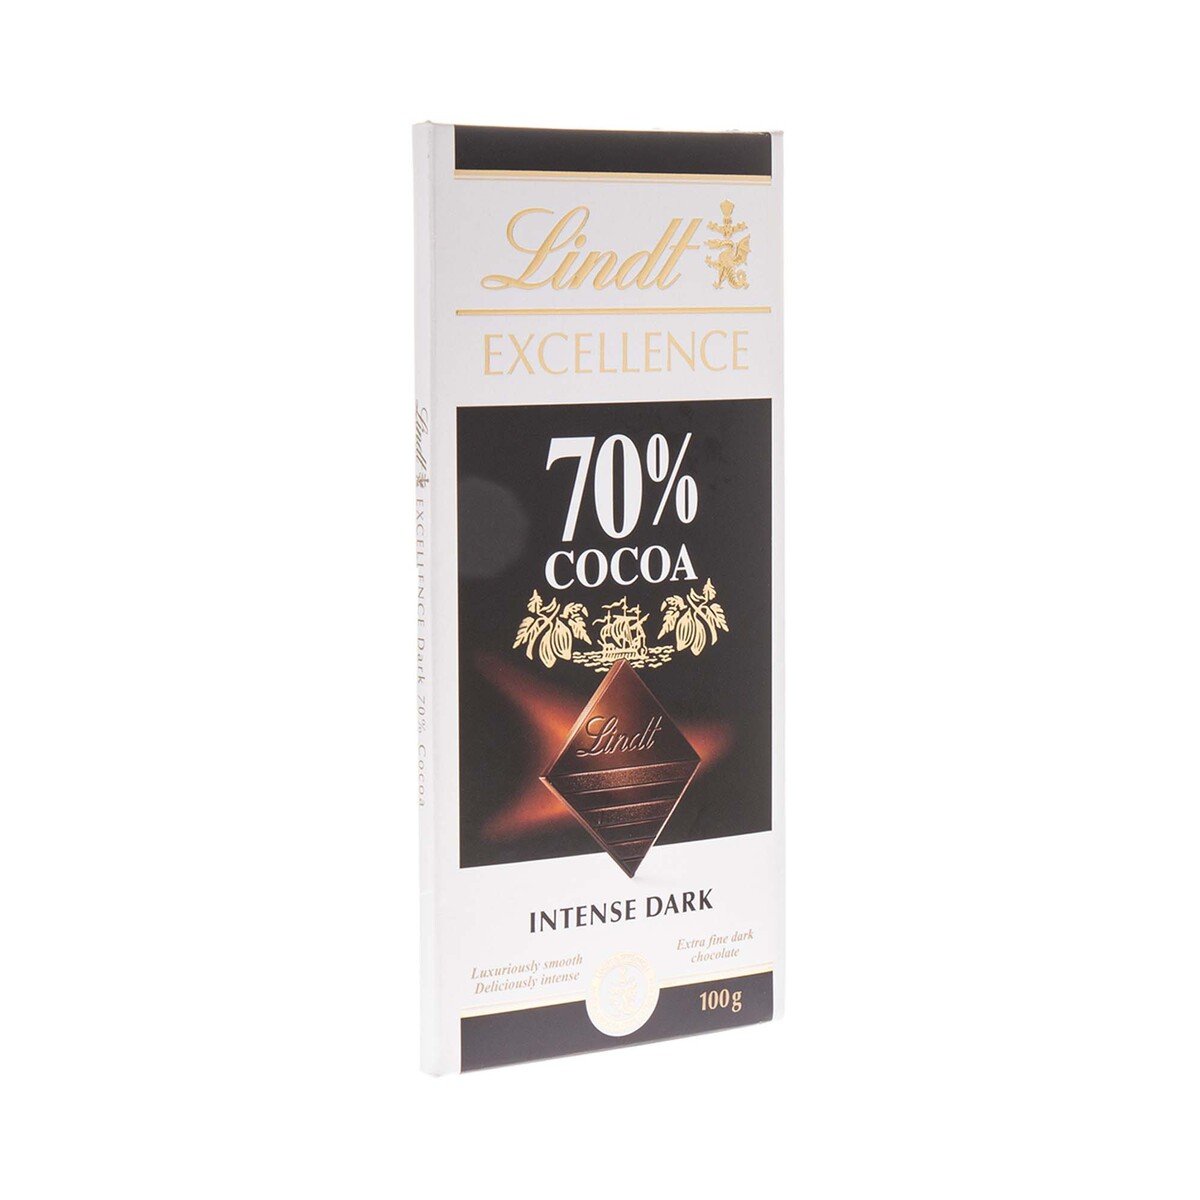 Lindt - Tablette Sésame Grillé EXCELLENCE - Chocolat Noir, 100g